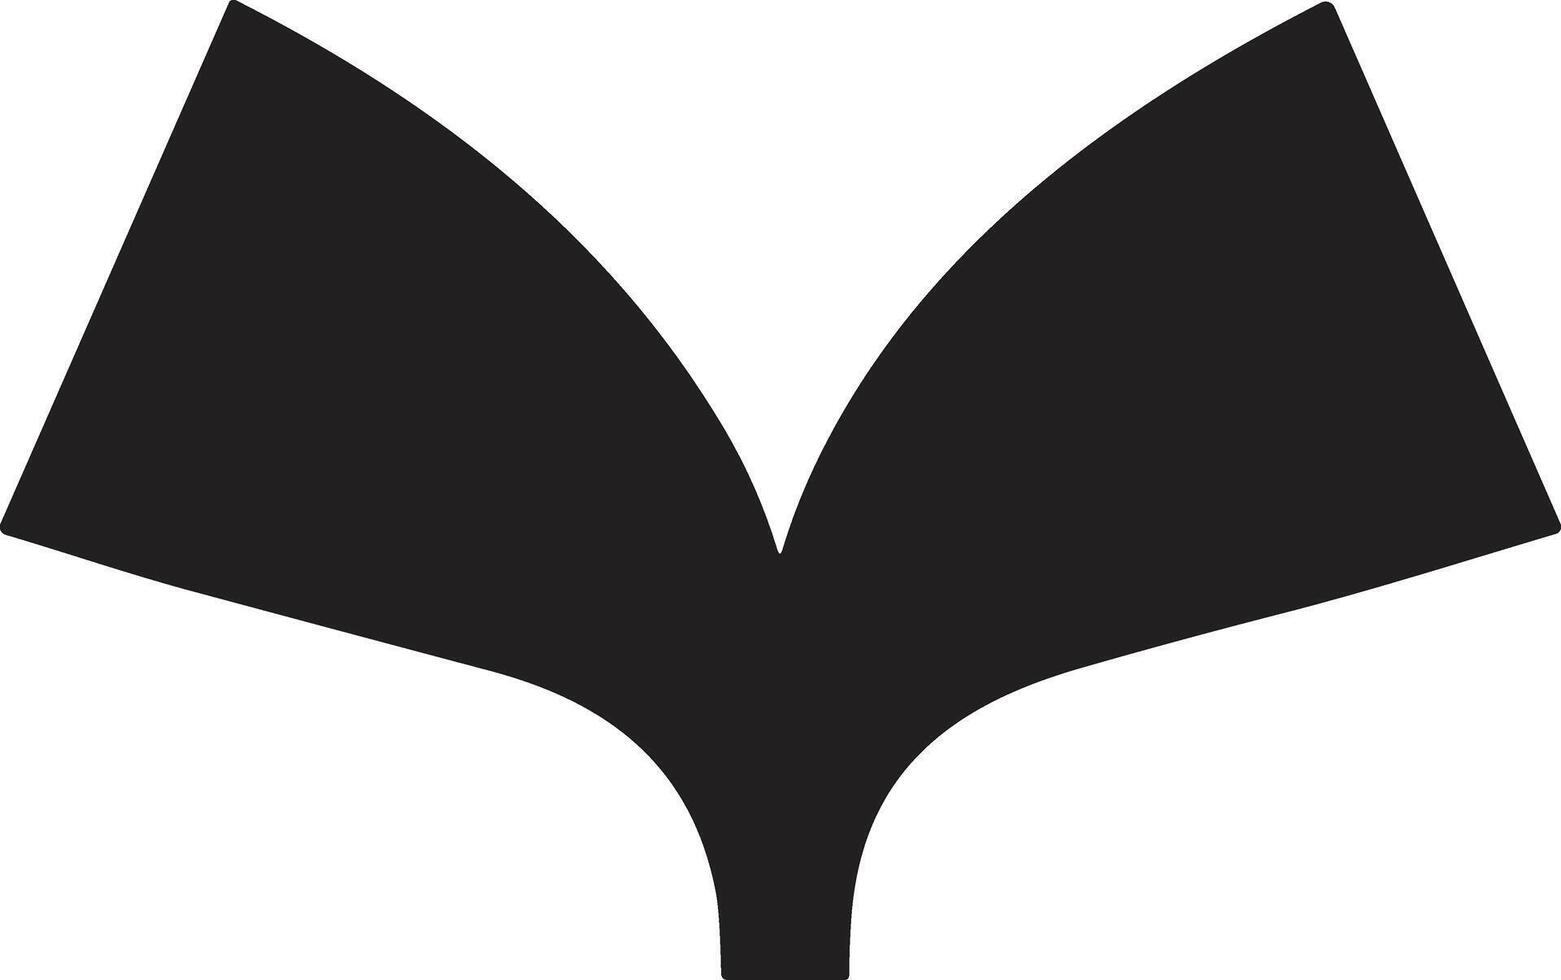 ouvert livre logo ou badge dans librairie concept dans ancien ou rétro style vecteur